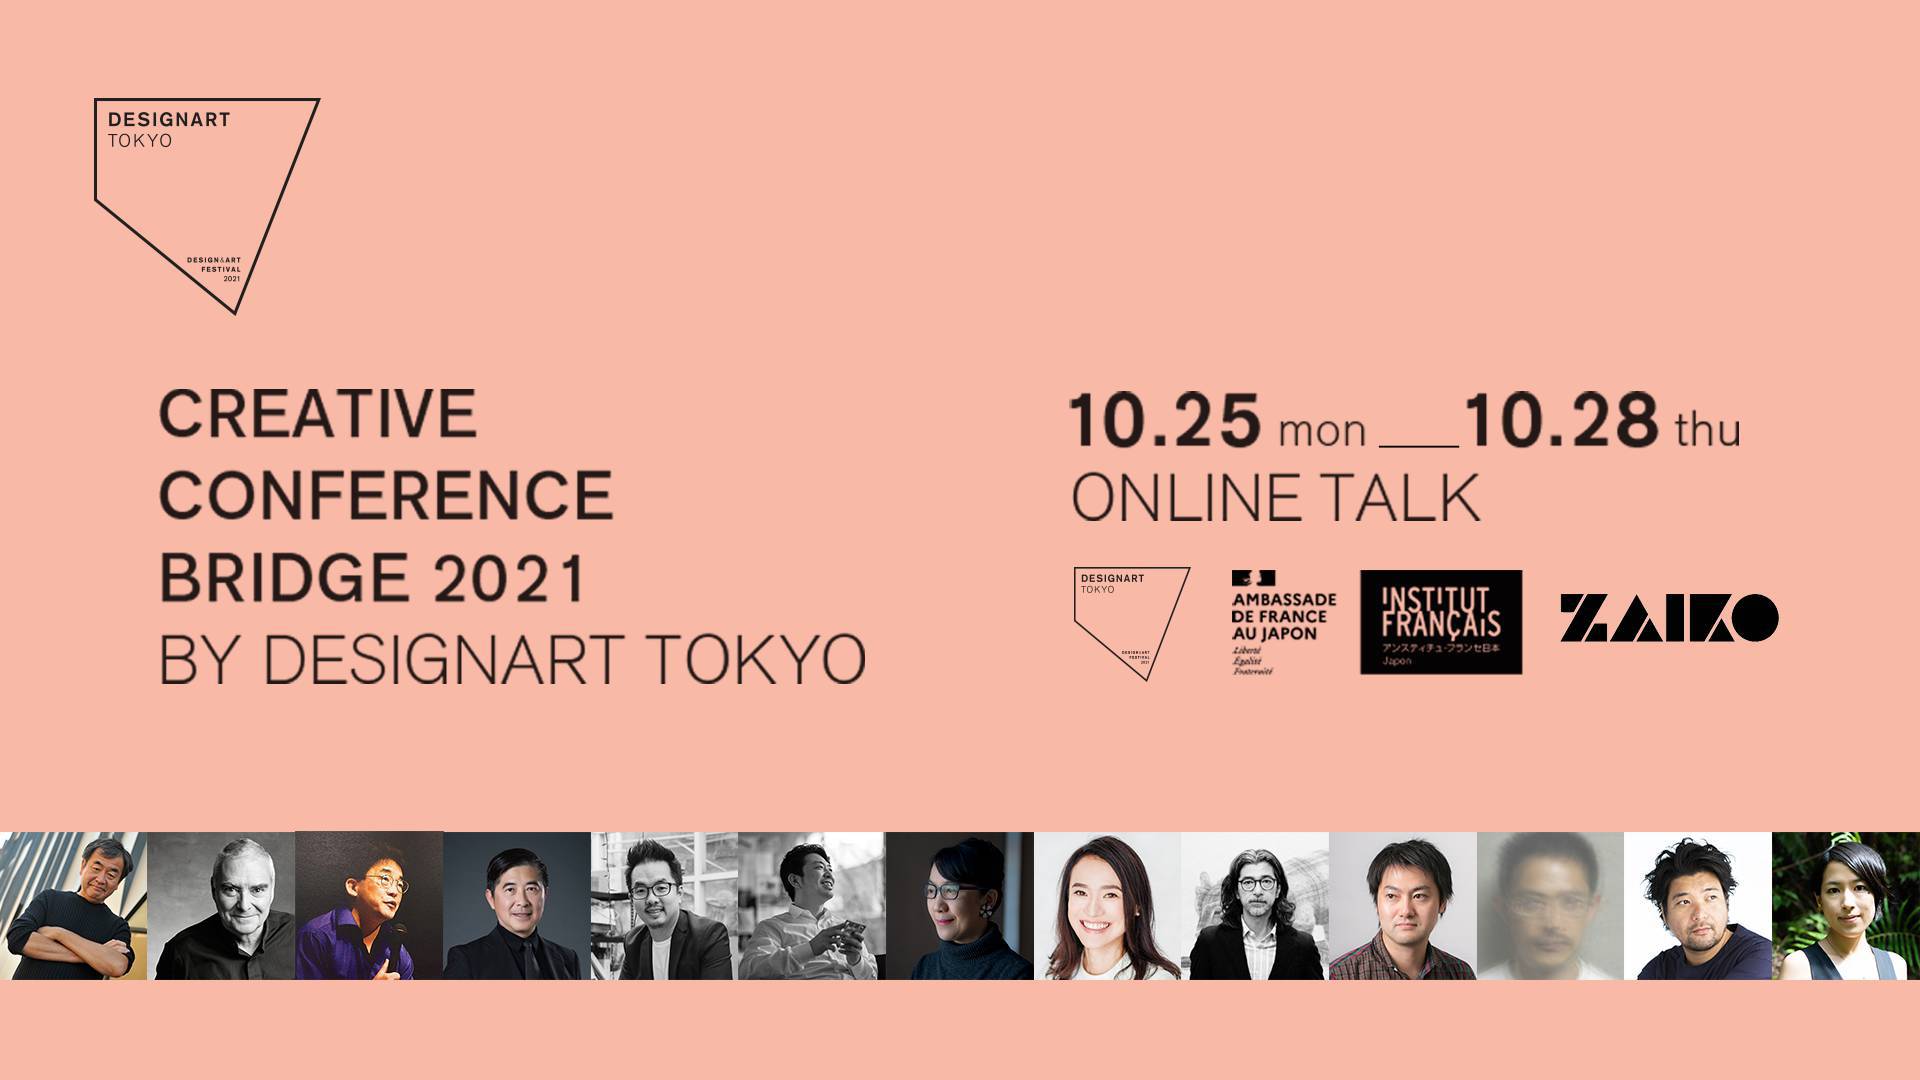 Affiche de la conférence sur fond rose avec écritures noires « Creative conference bridge 2021 by design art Tokyo » avec les portraits des intervenants en bas